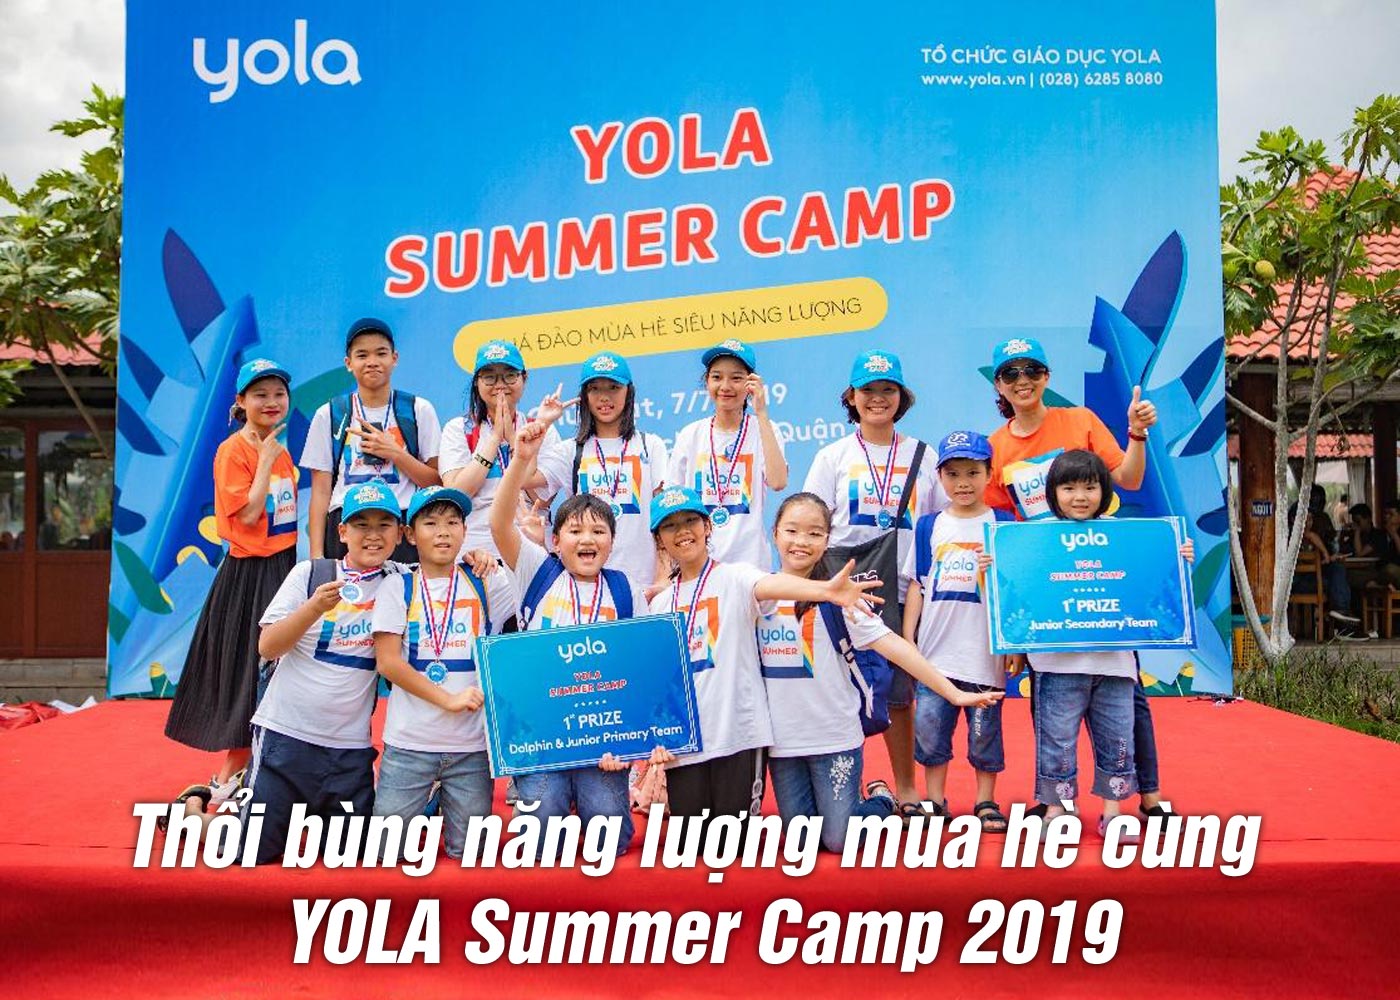 Thổi bùng năng lượng mùa hè cùng YOLA Summer Camp 2019 - Ảnh 1